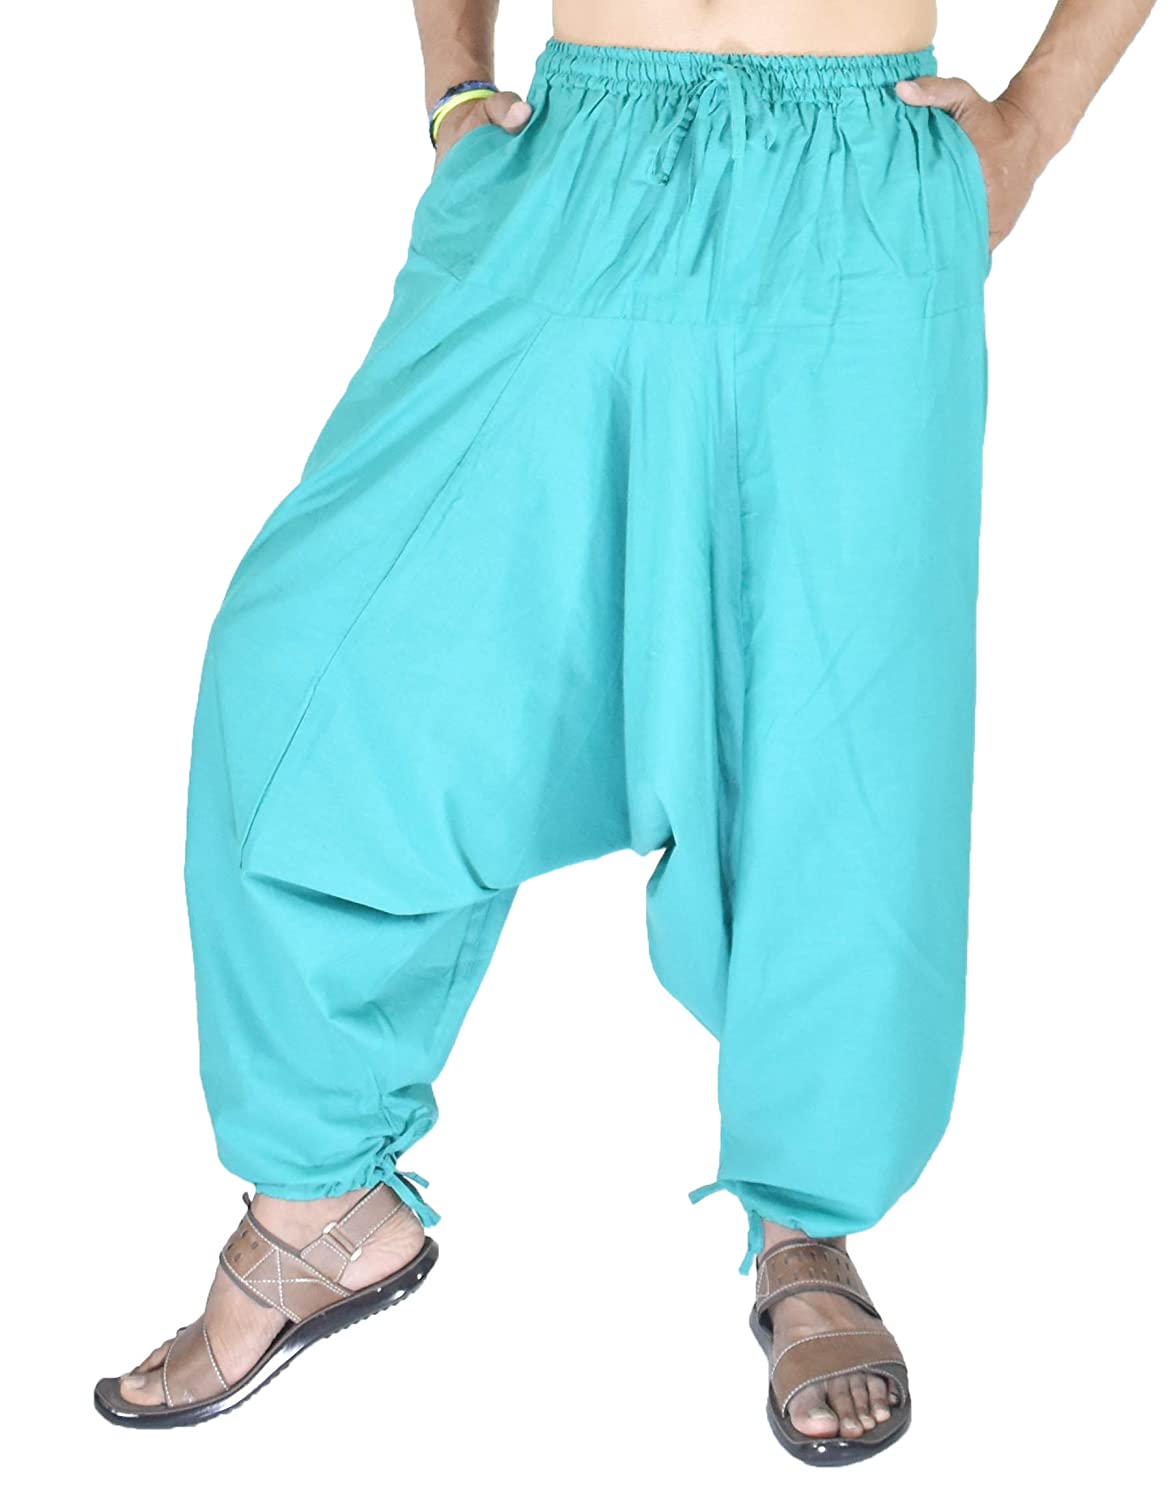 Buy Boho Harem Pants Online In India  Etsy India